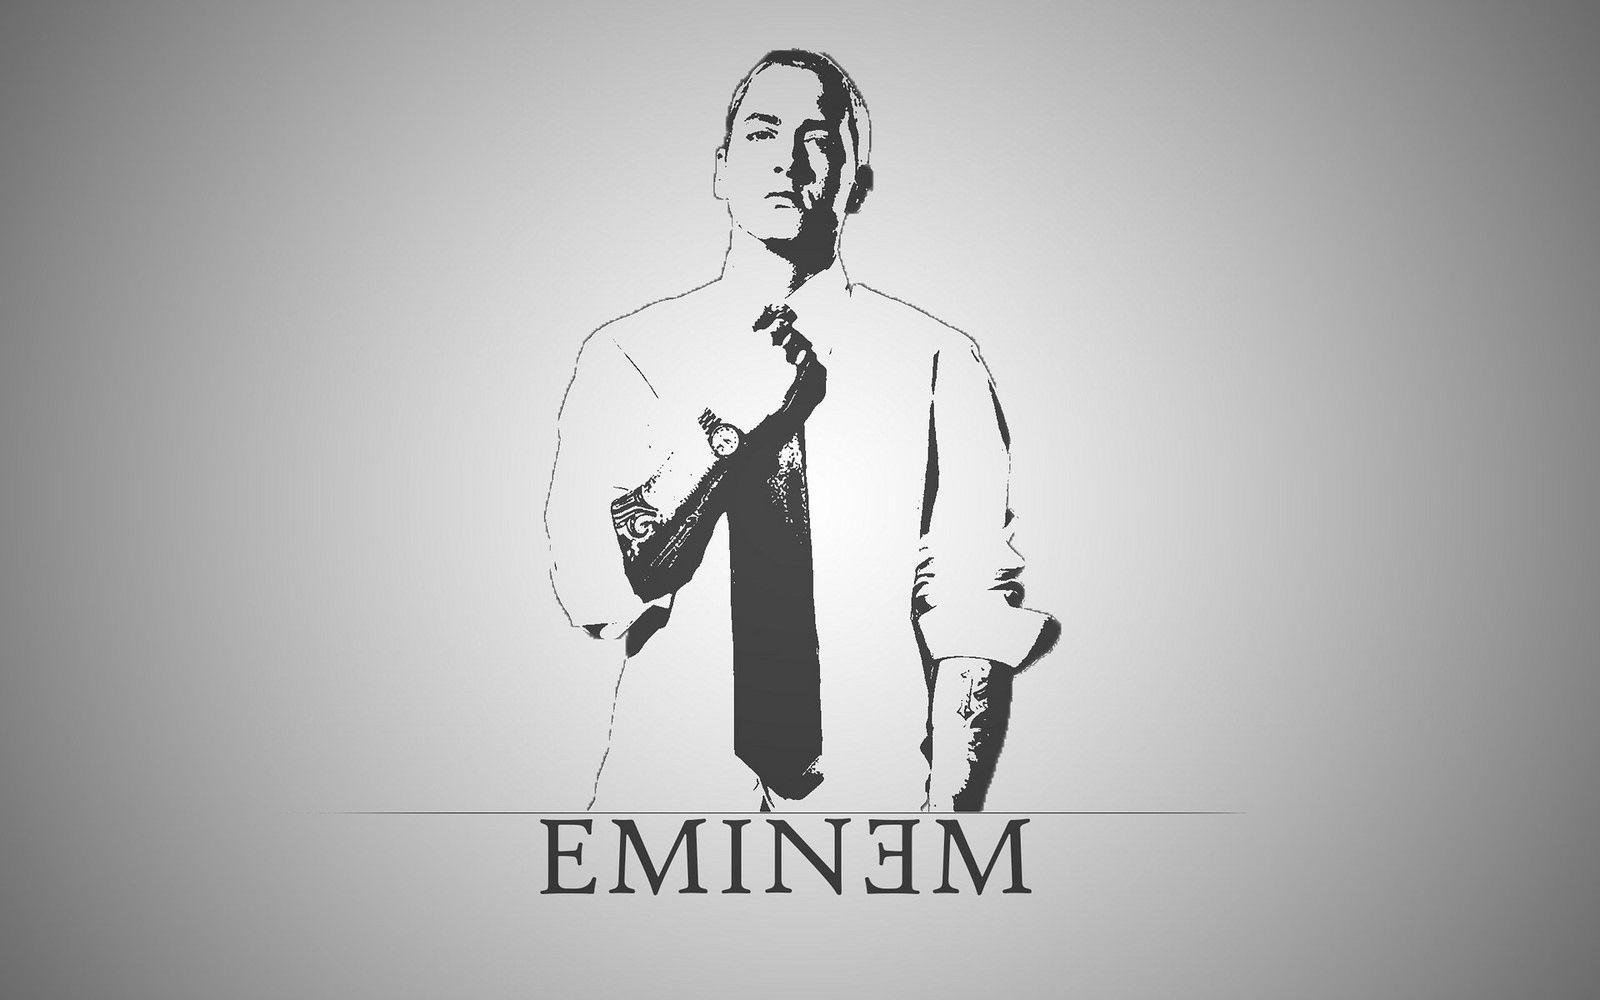 Eminem Black and White Logo - Is Eminem Dad Rock? - The Awl